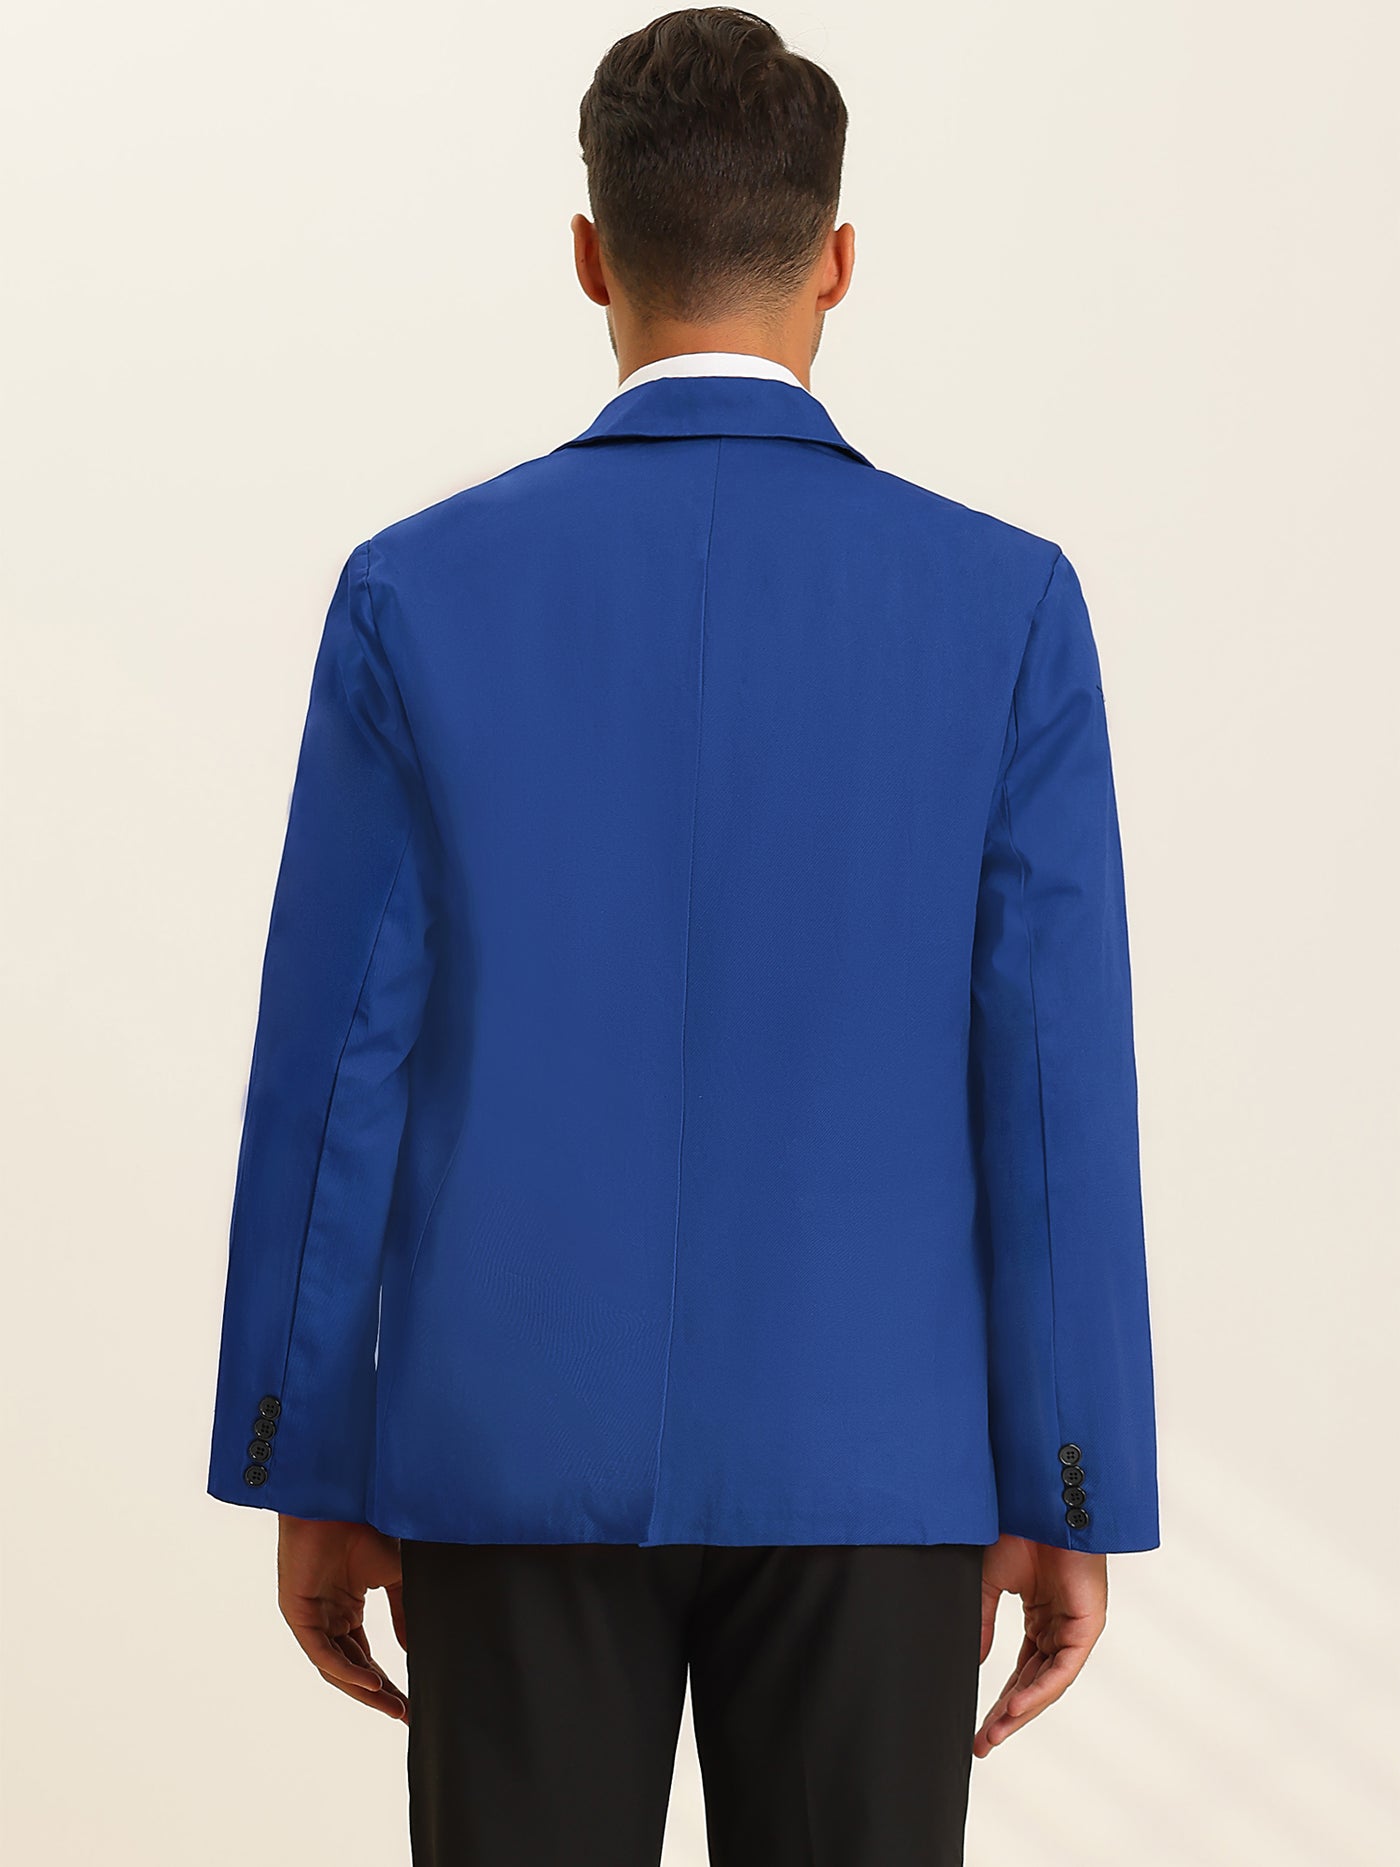 Bublédon Men's Casual Blazer One Button Slim Fit Lightweight Suit Jacket